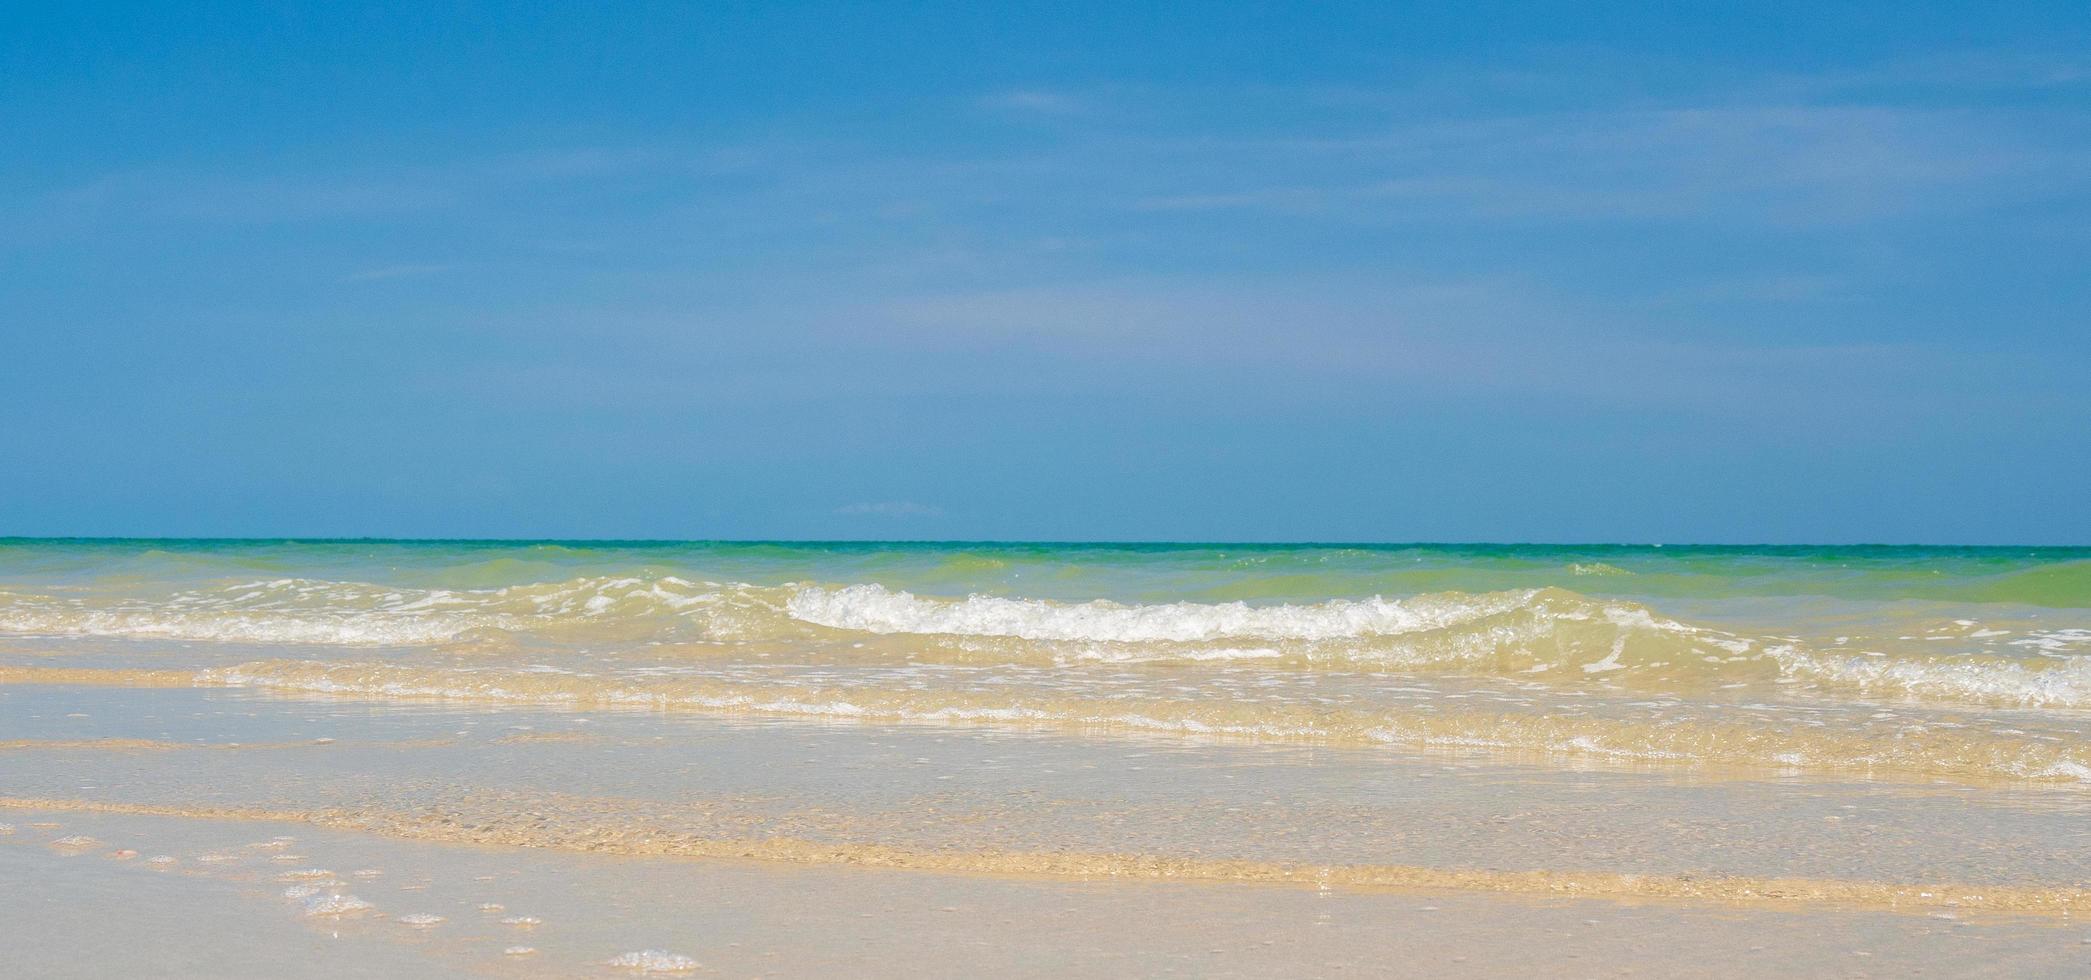 visie zomer landschap suan zoon strand heeft schoon wit zand strand uitrekken langs kust golf Thailand oosten- land en Doorzichtig luchten, geschikt voor ontspanning, vakantie in Thailand Rayong foto